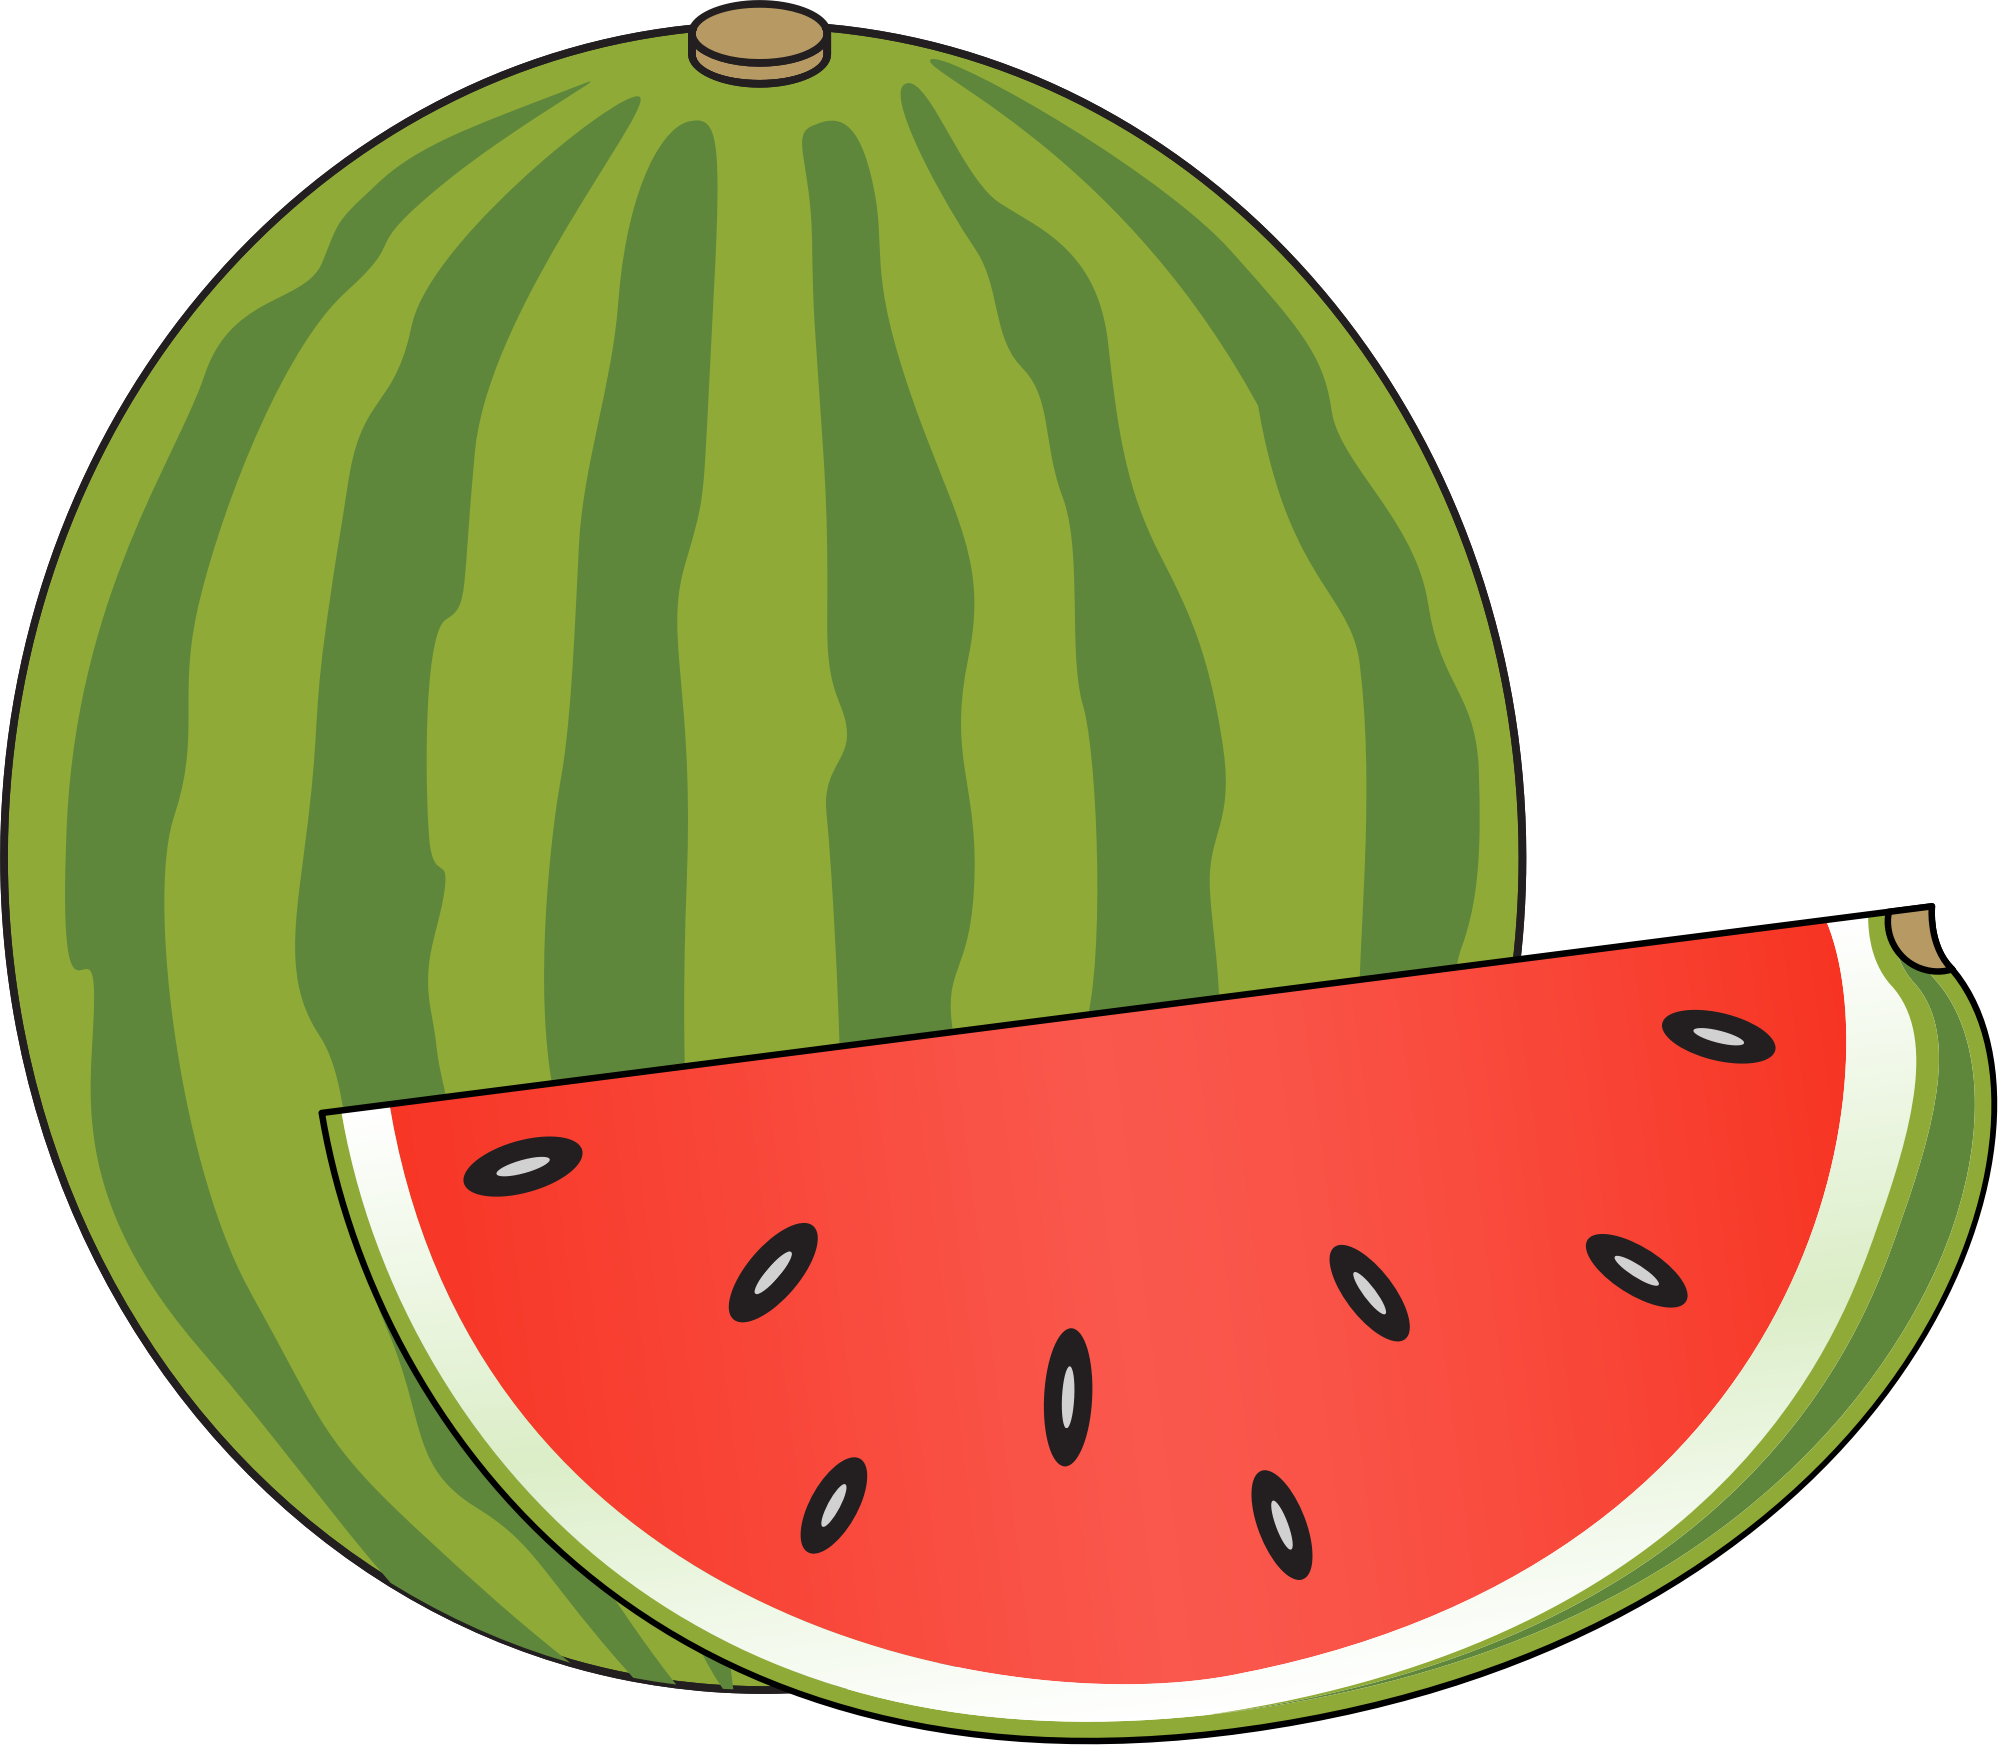 Watermelon clipart small.